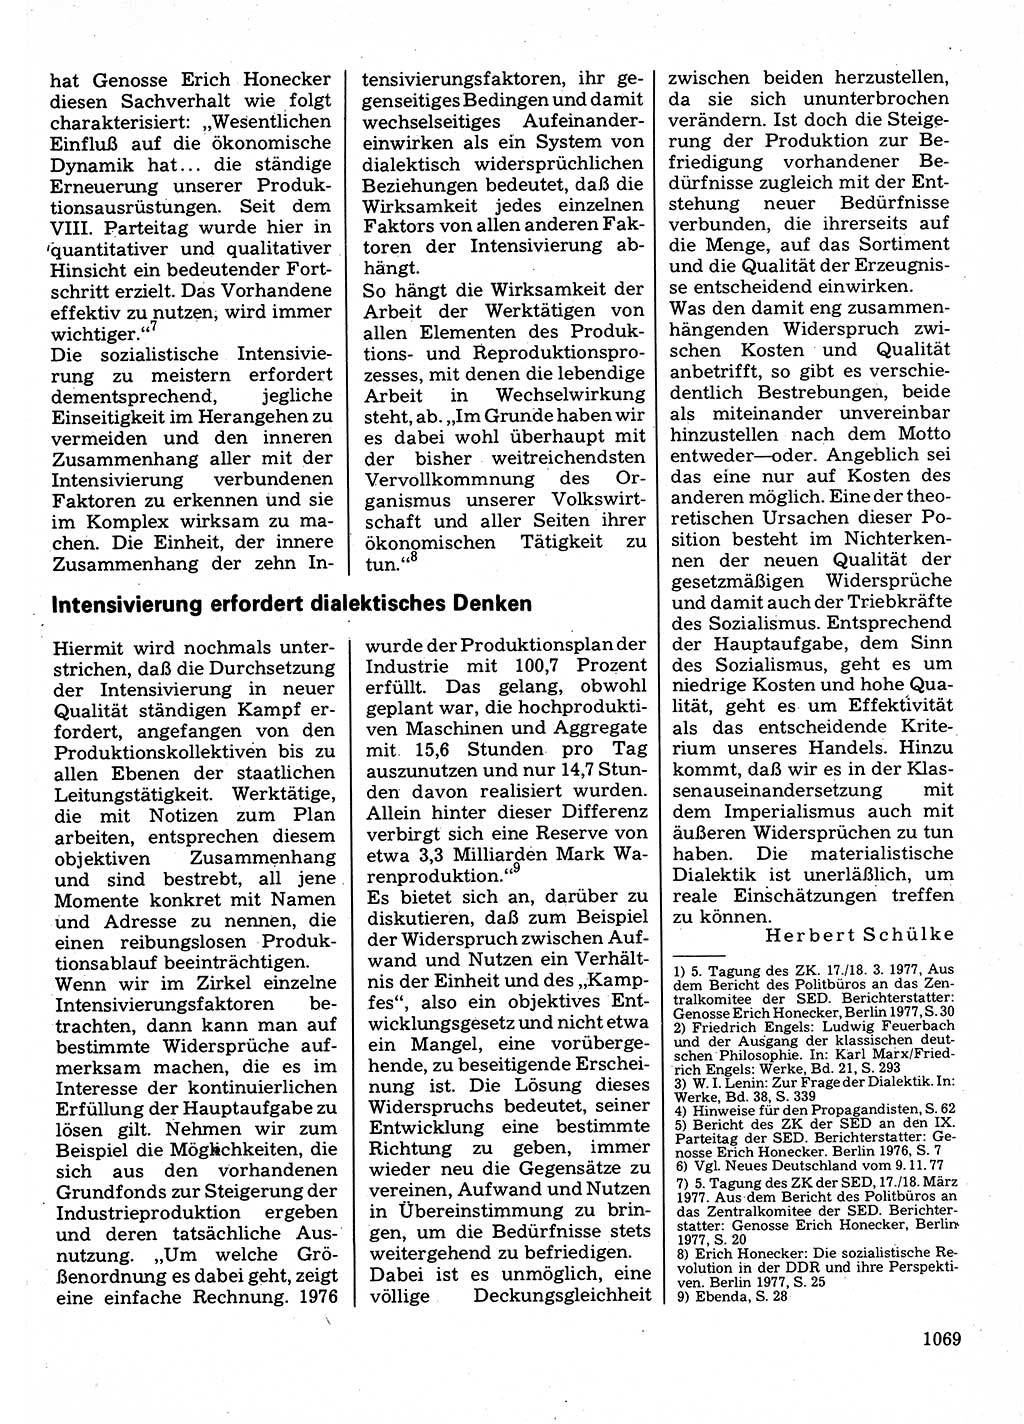 Neuer Weg (NW), Organ des Zentralkomitees (ZK) der SED (Sozialistische Einheitspartei Deutschlands) für Fragen des Parteilebens, 32. Jahrgang [Deutsche Demokratische Republik (DDR)] 1977, Seite 1069 (NW ZK SED DDR 1977, S. 1069)